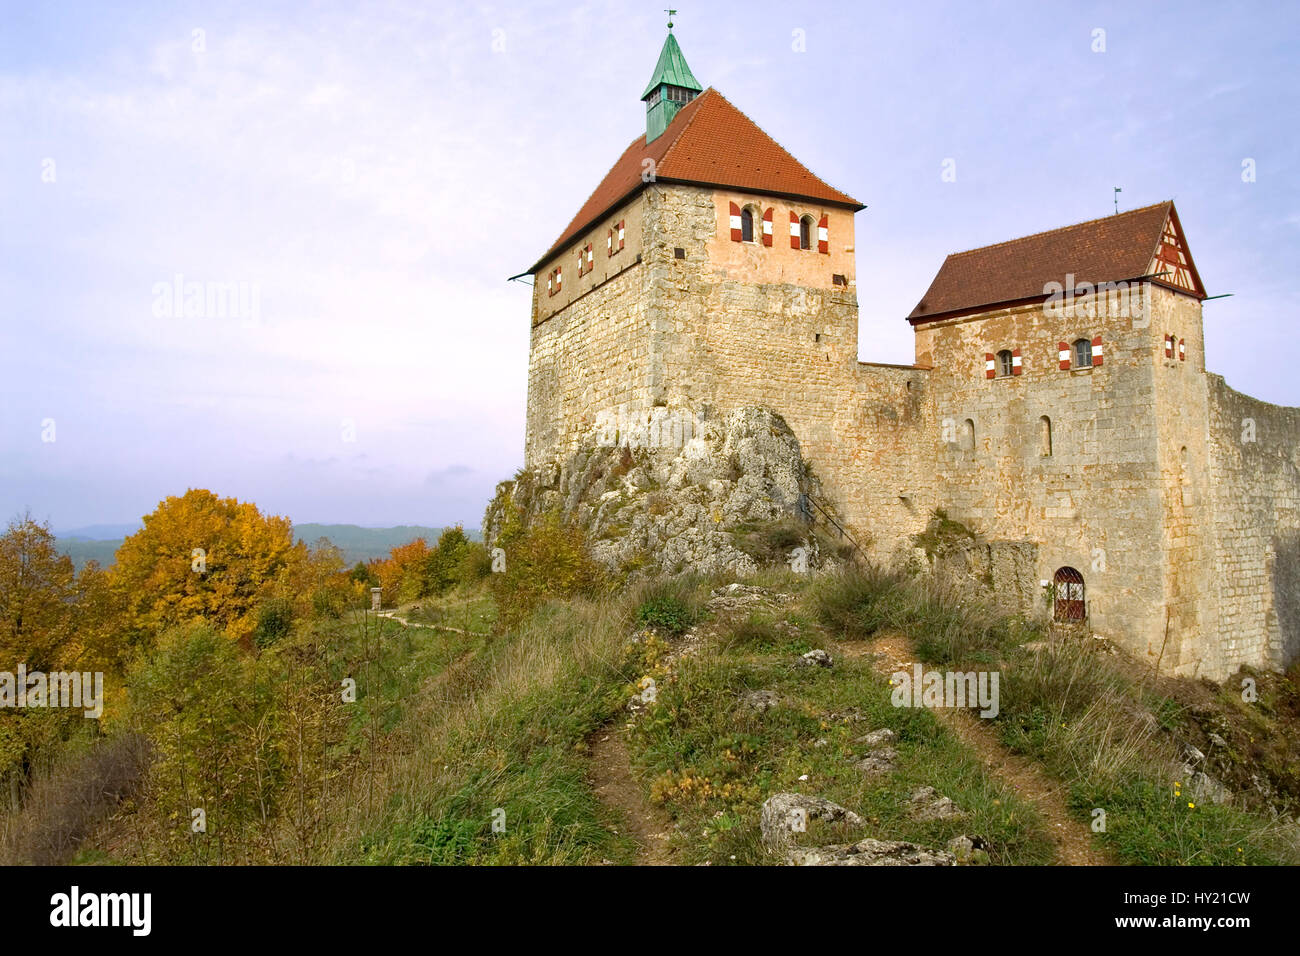 Blick auf die Burg Hohenstein in Bayern, Deutschland.  Image of the Castle Hohenstein the German state of Bavaria. Stock Photo